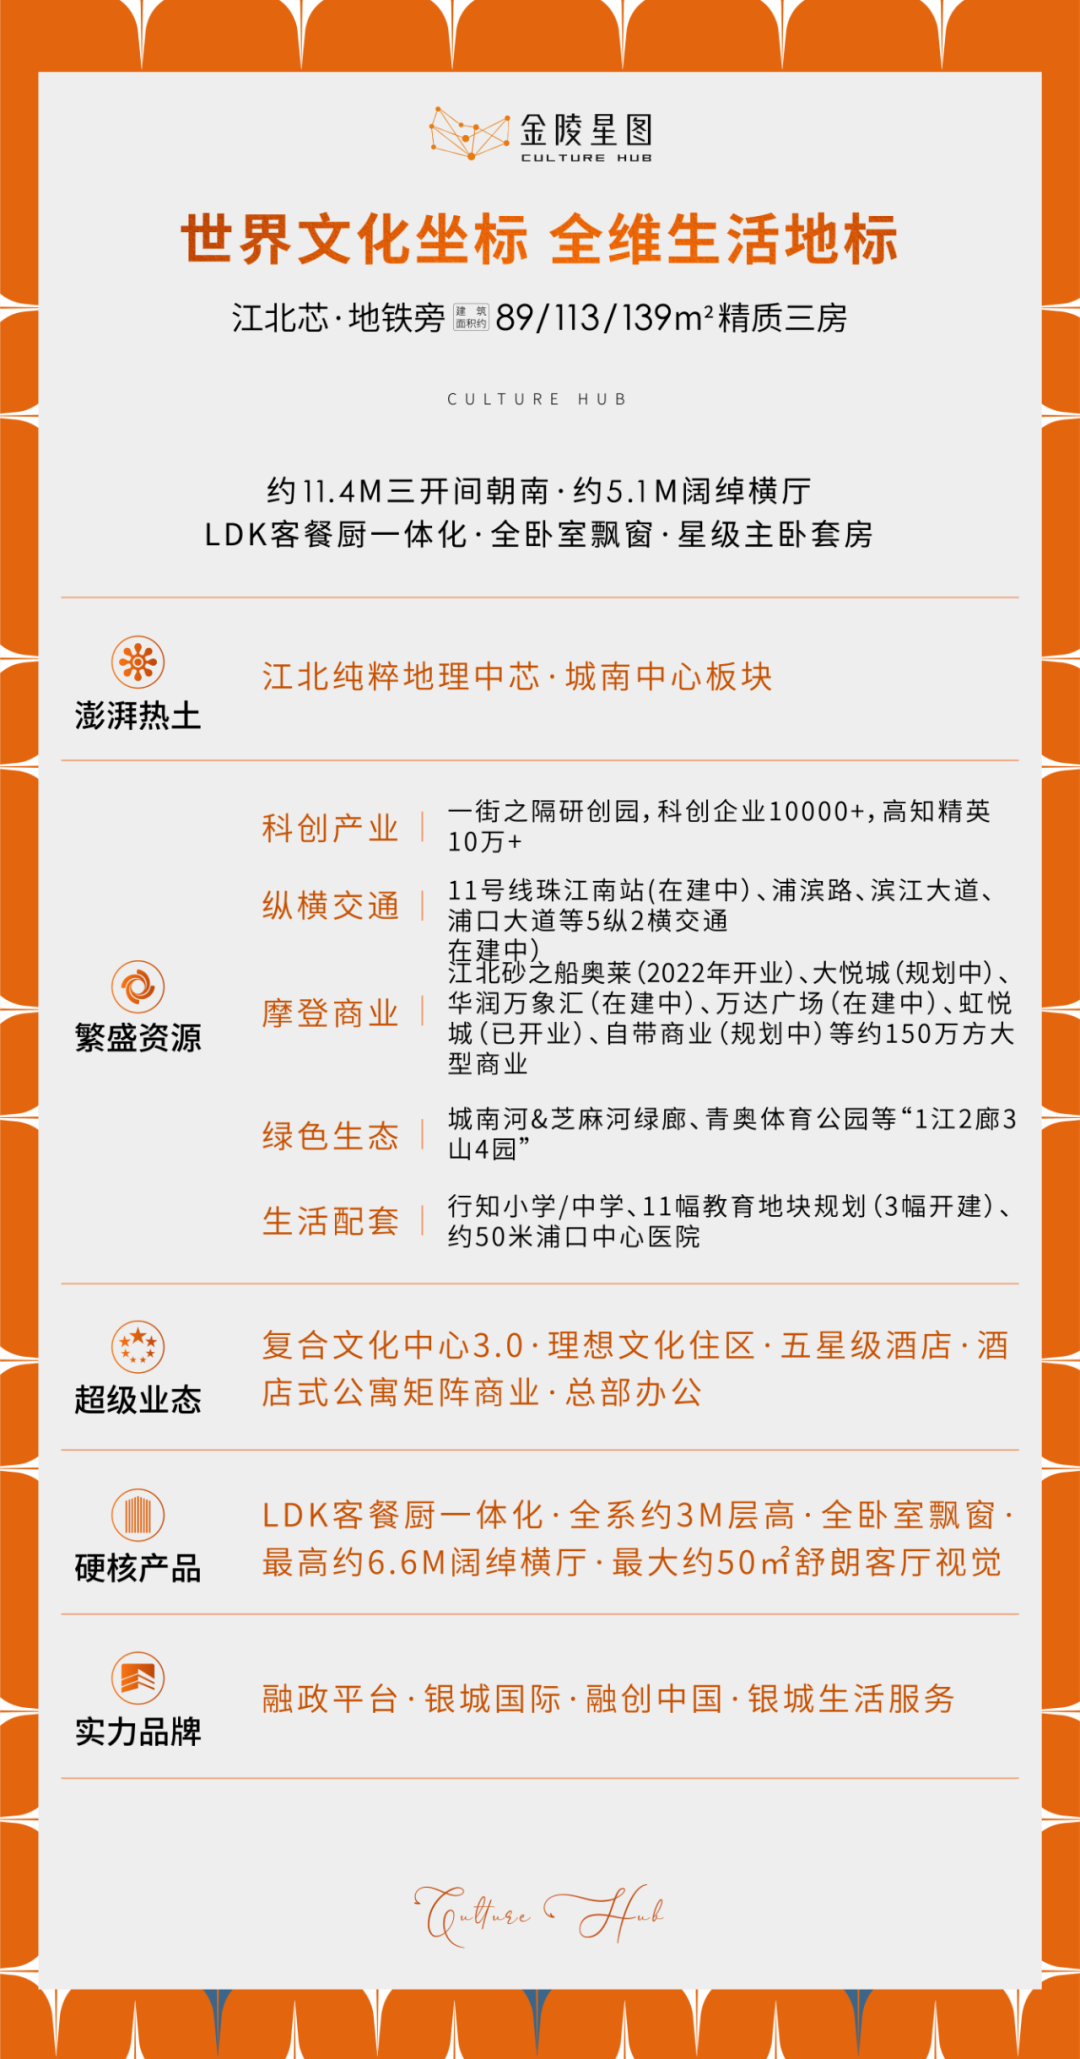 金陵星圖  一次資源的鏡像濃縮 一處代言南京的封面地標_中國網地産